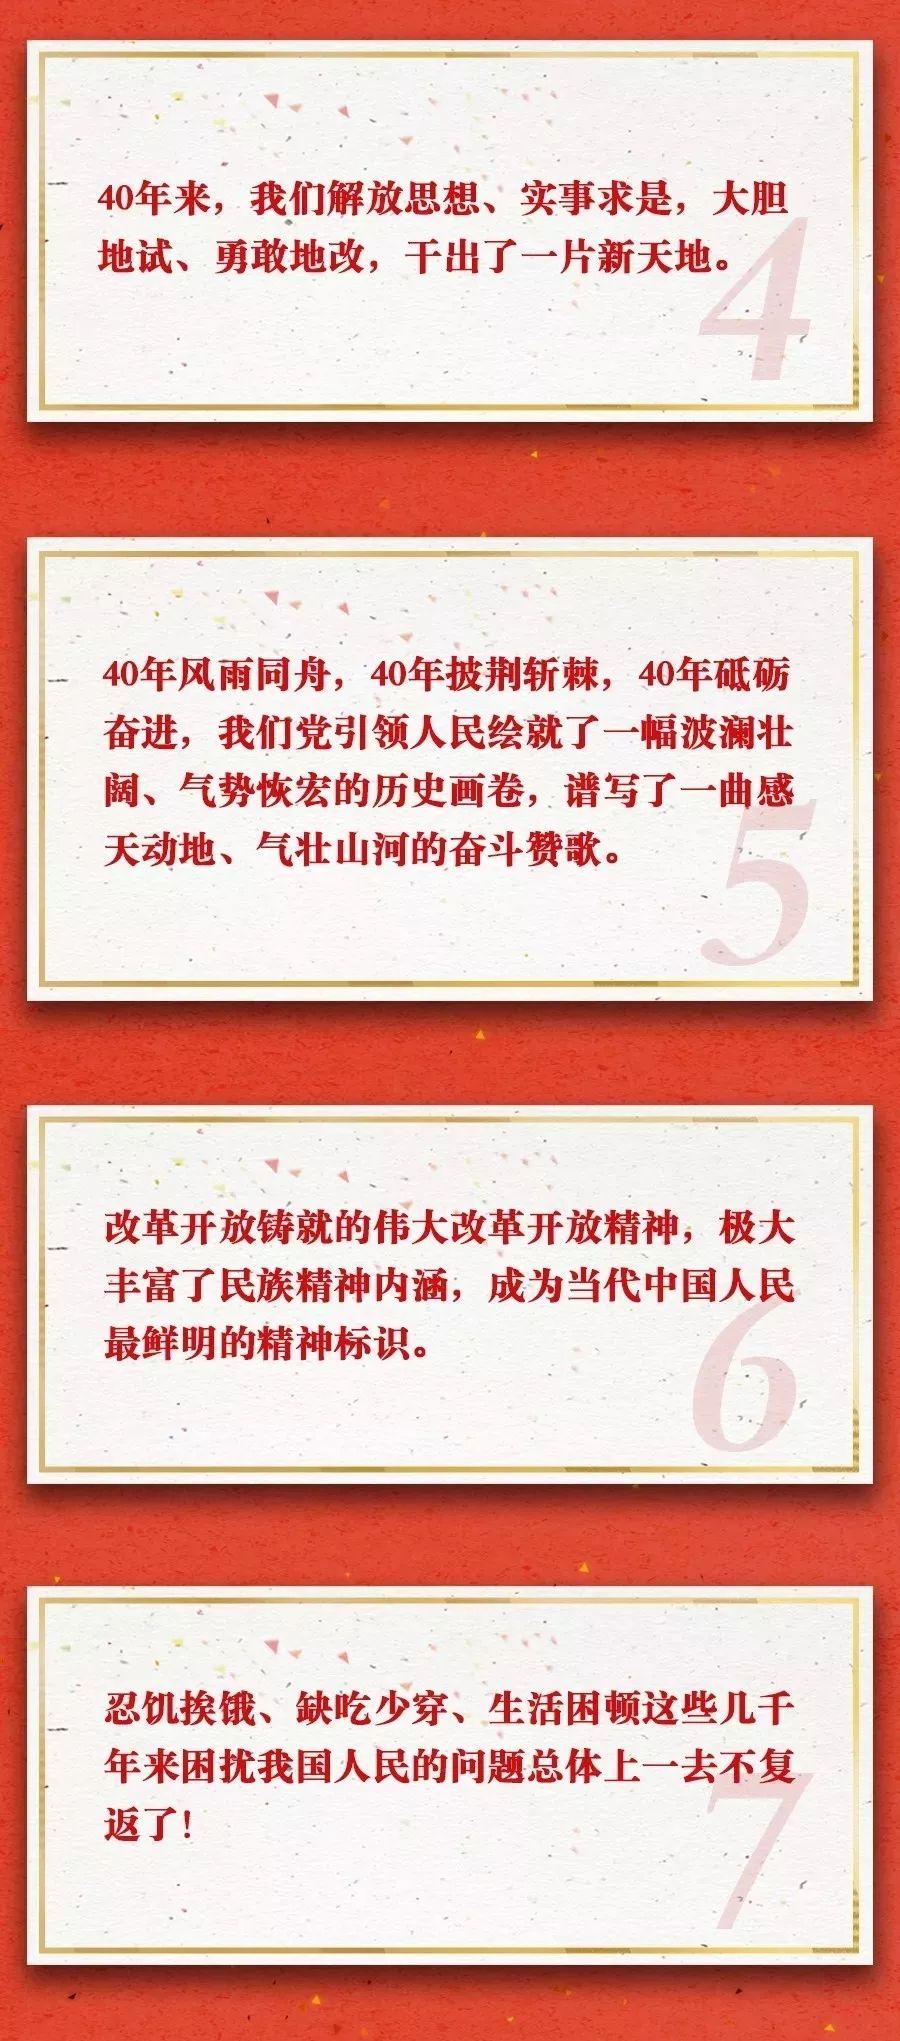 云南省工人疗养院组织观看庆祝改革开放40周年大会直播盛况